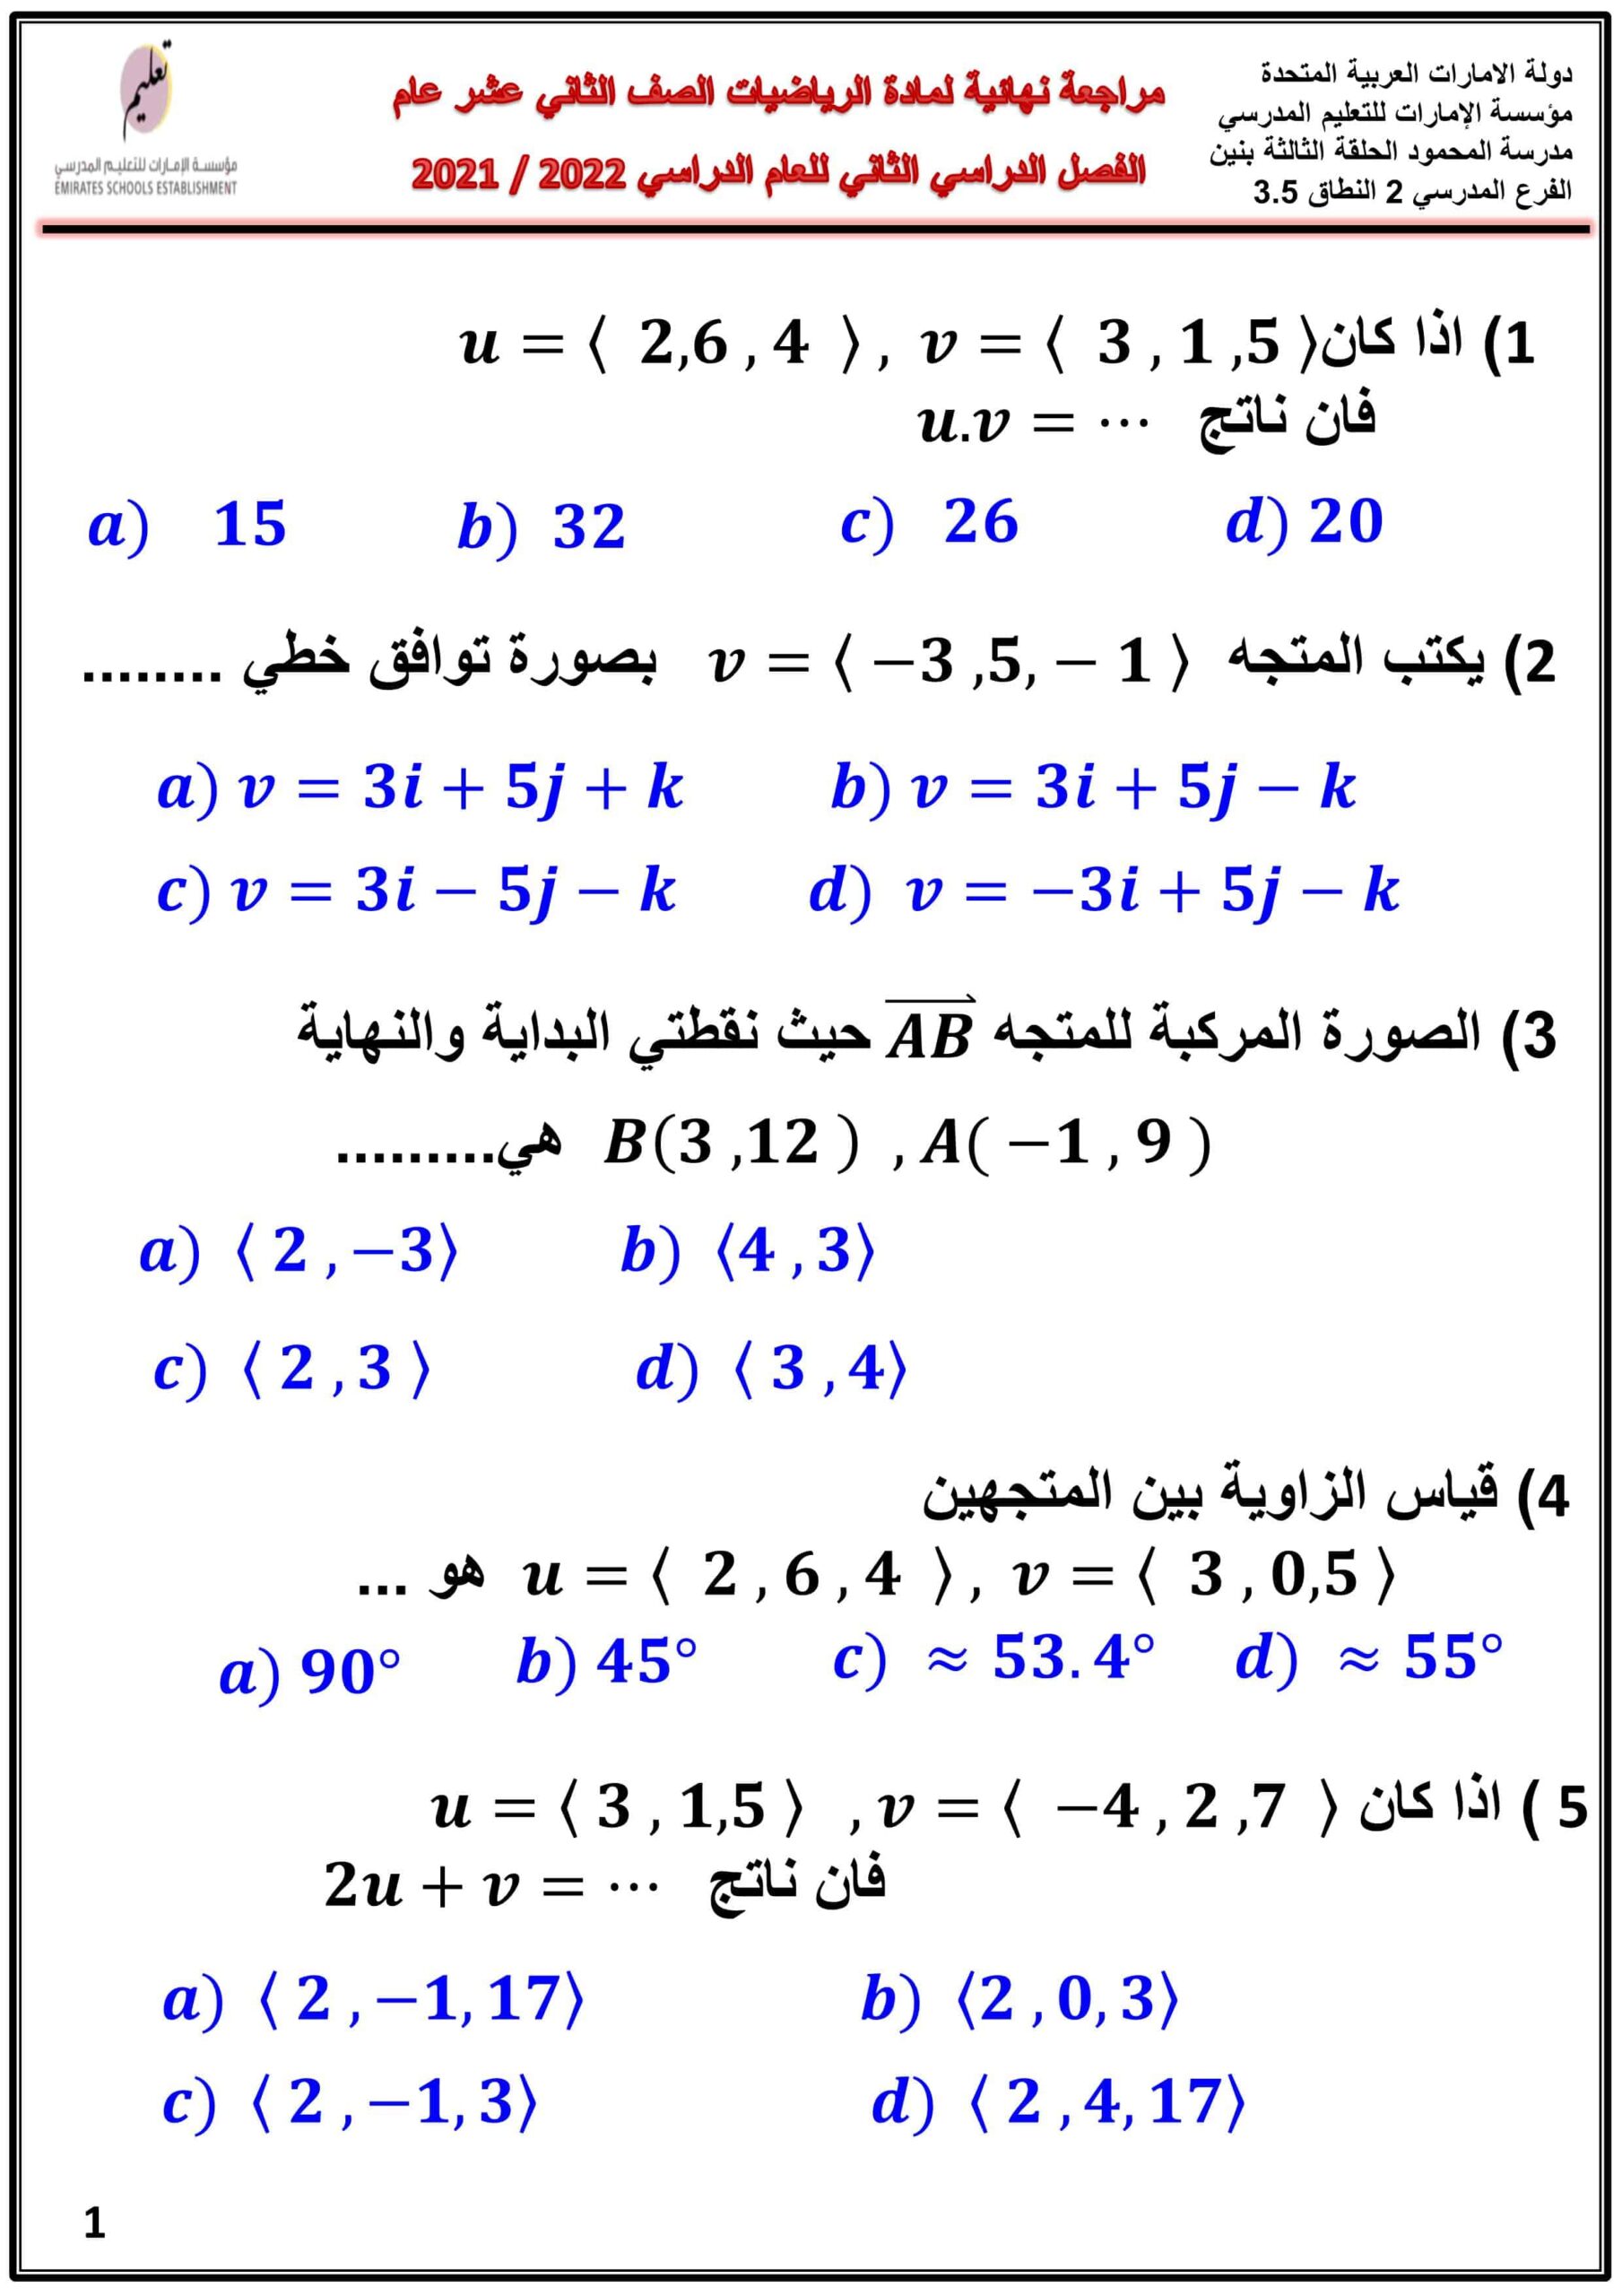 حل أوراق عمل مراجعة نهائية الرياضيات المتكاملة الصف الثاني عشر عام